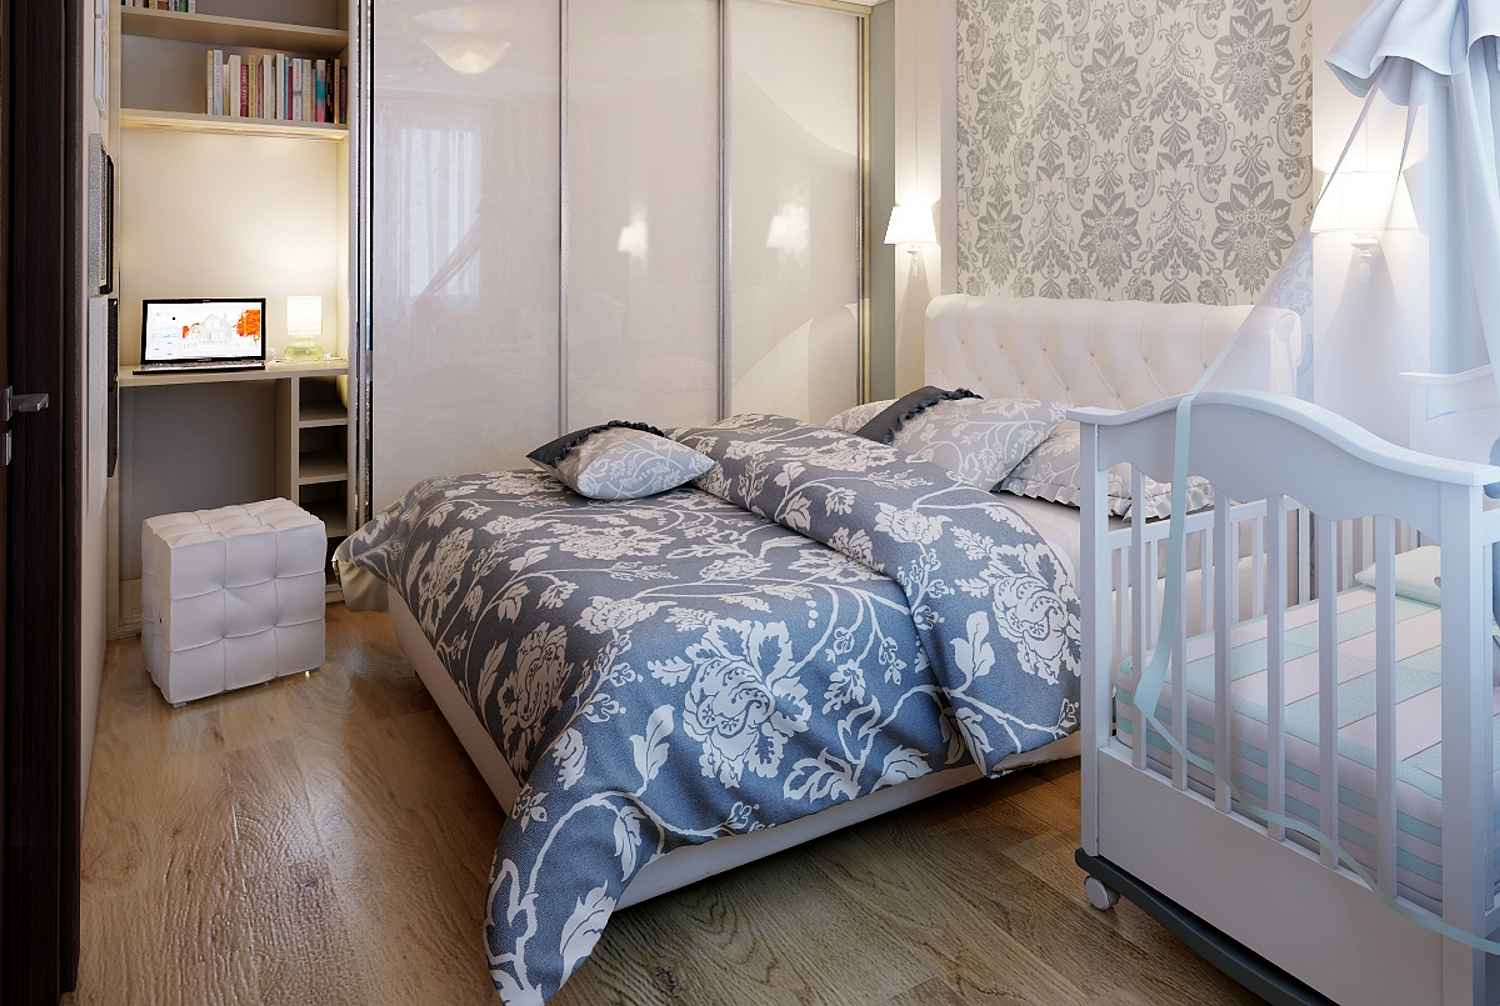 Спальня и детская в одной комнате: идеи зонирования и способы совмещения с фото-примерами